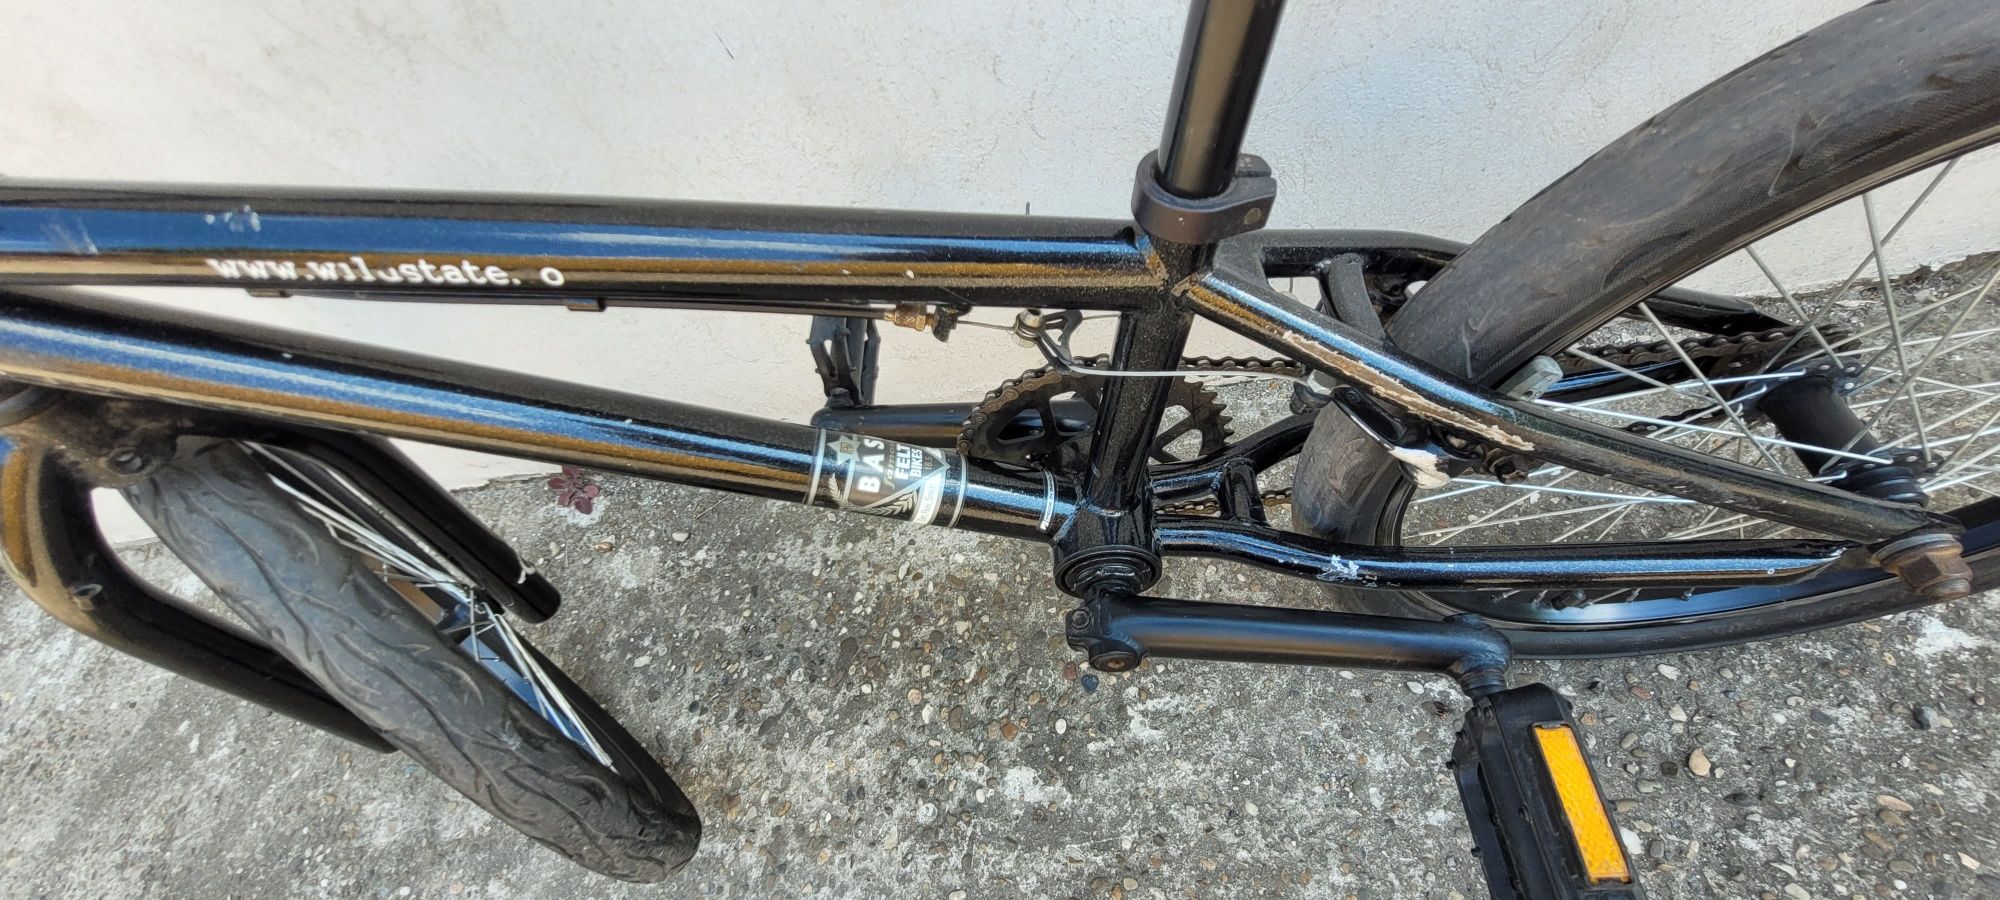 Bicicleta BMX FELT 20"